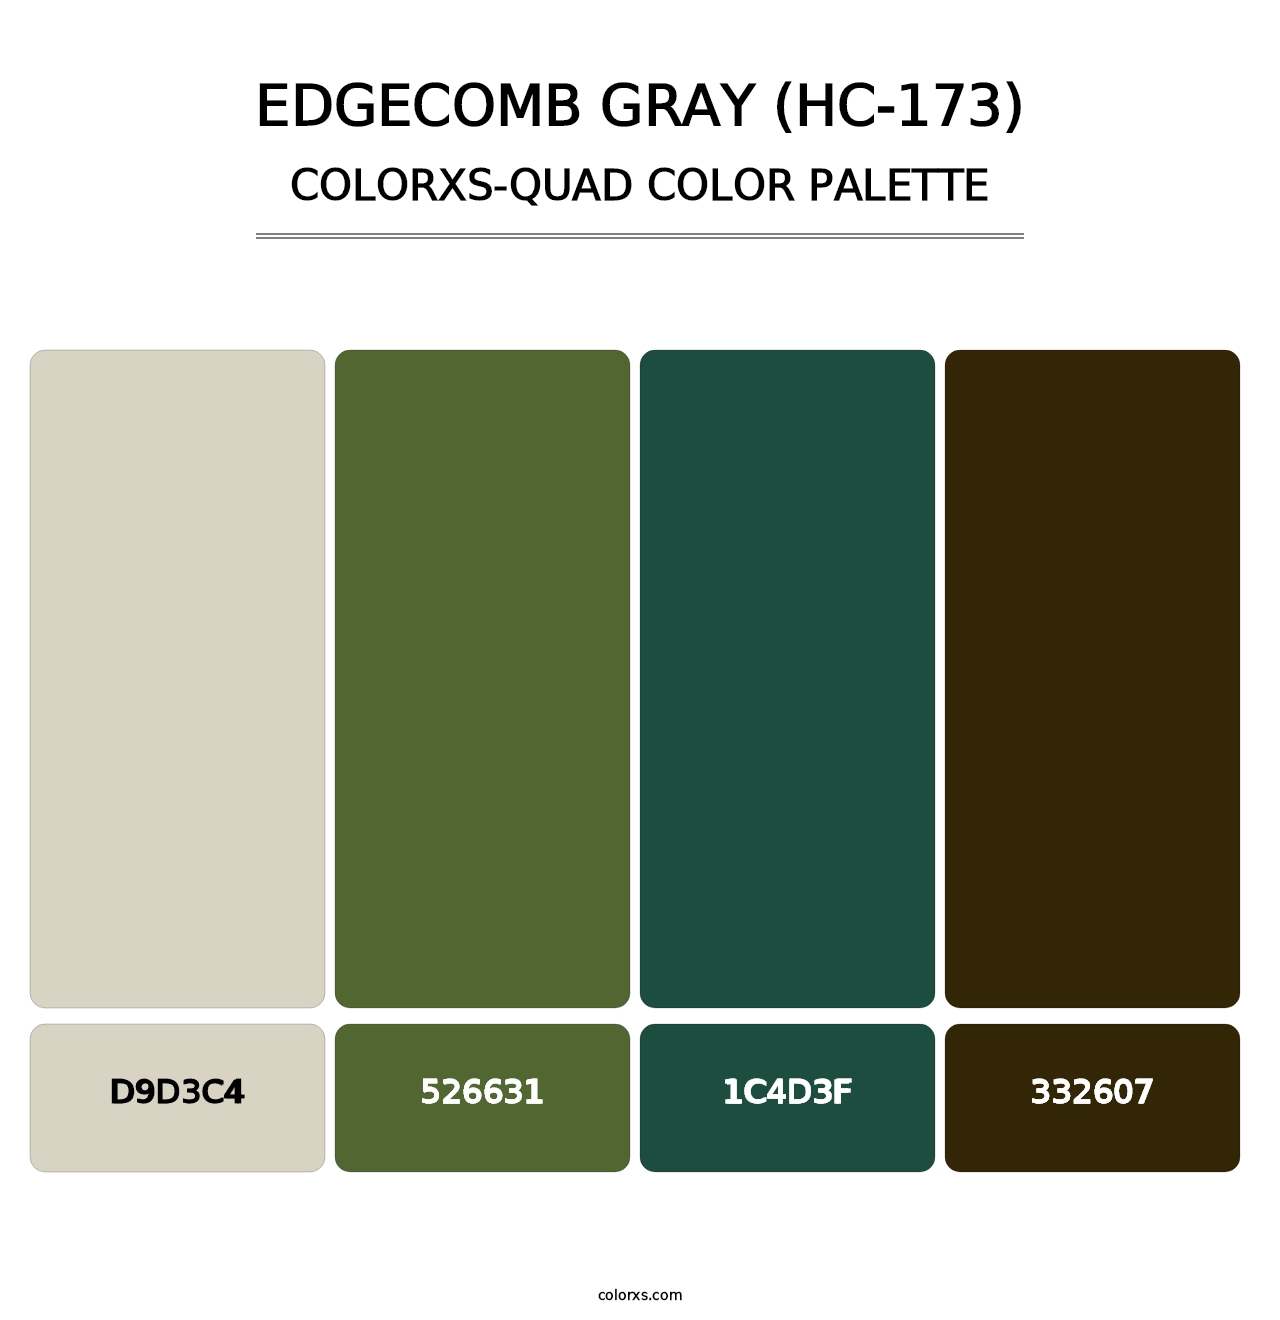 Edgecomb Gray (HC-173) - Colorxs Quad Palette